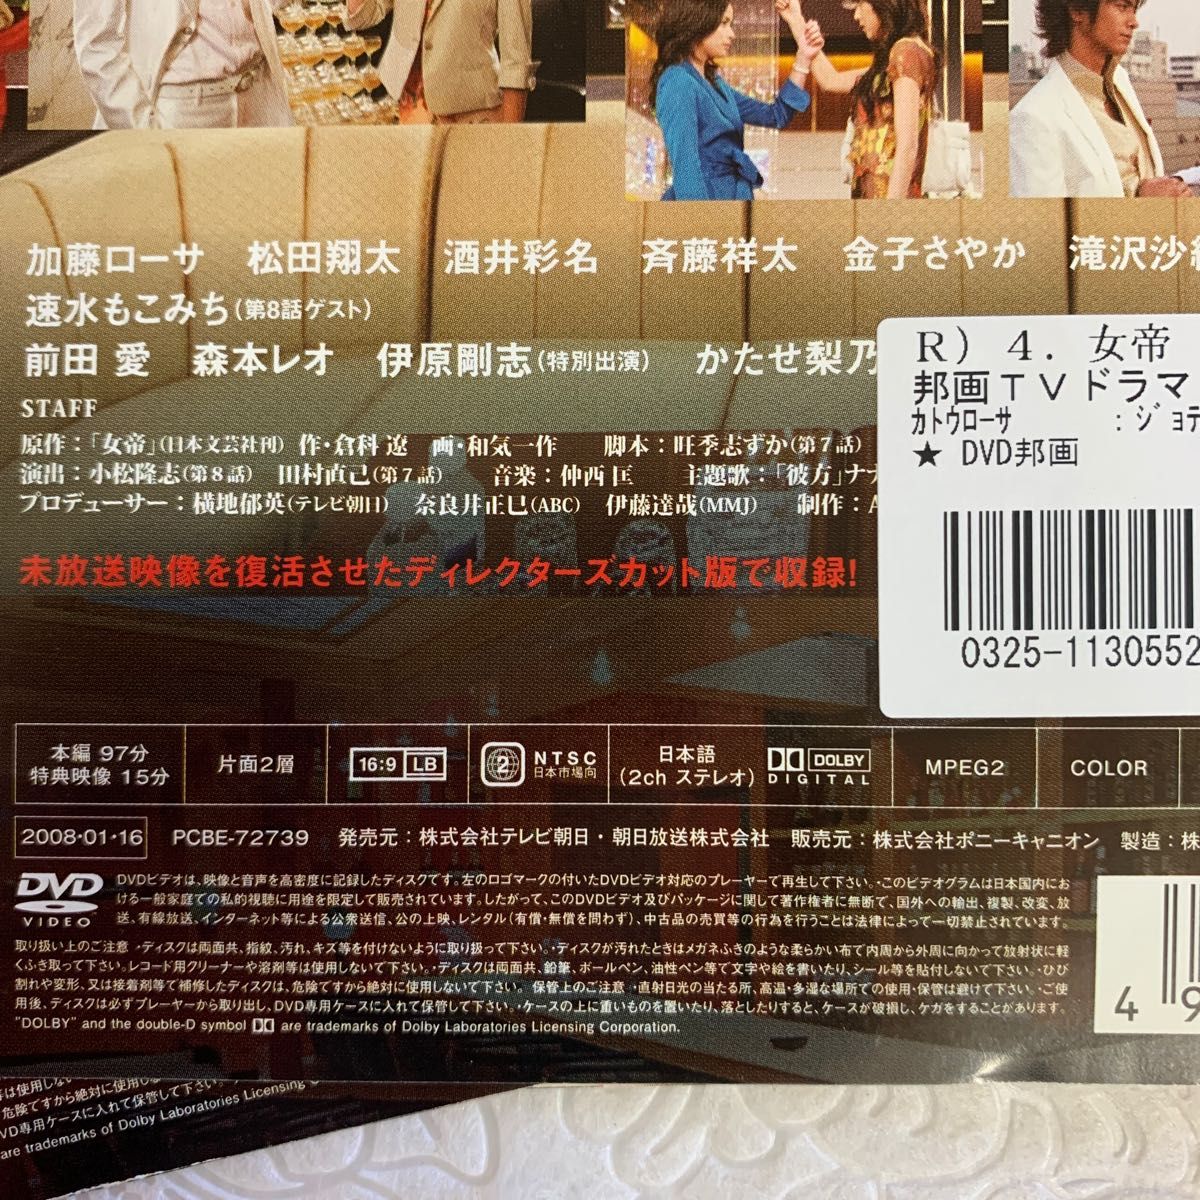 女帝 全5巻 加藤ローサ/松田翔太 レンタル版 DVD